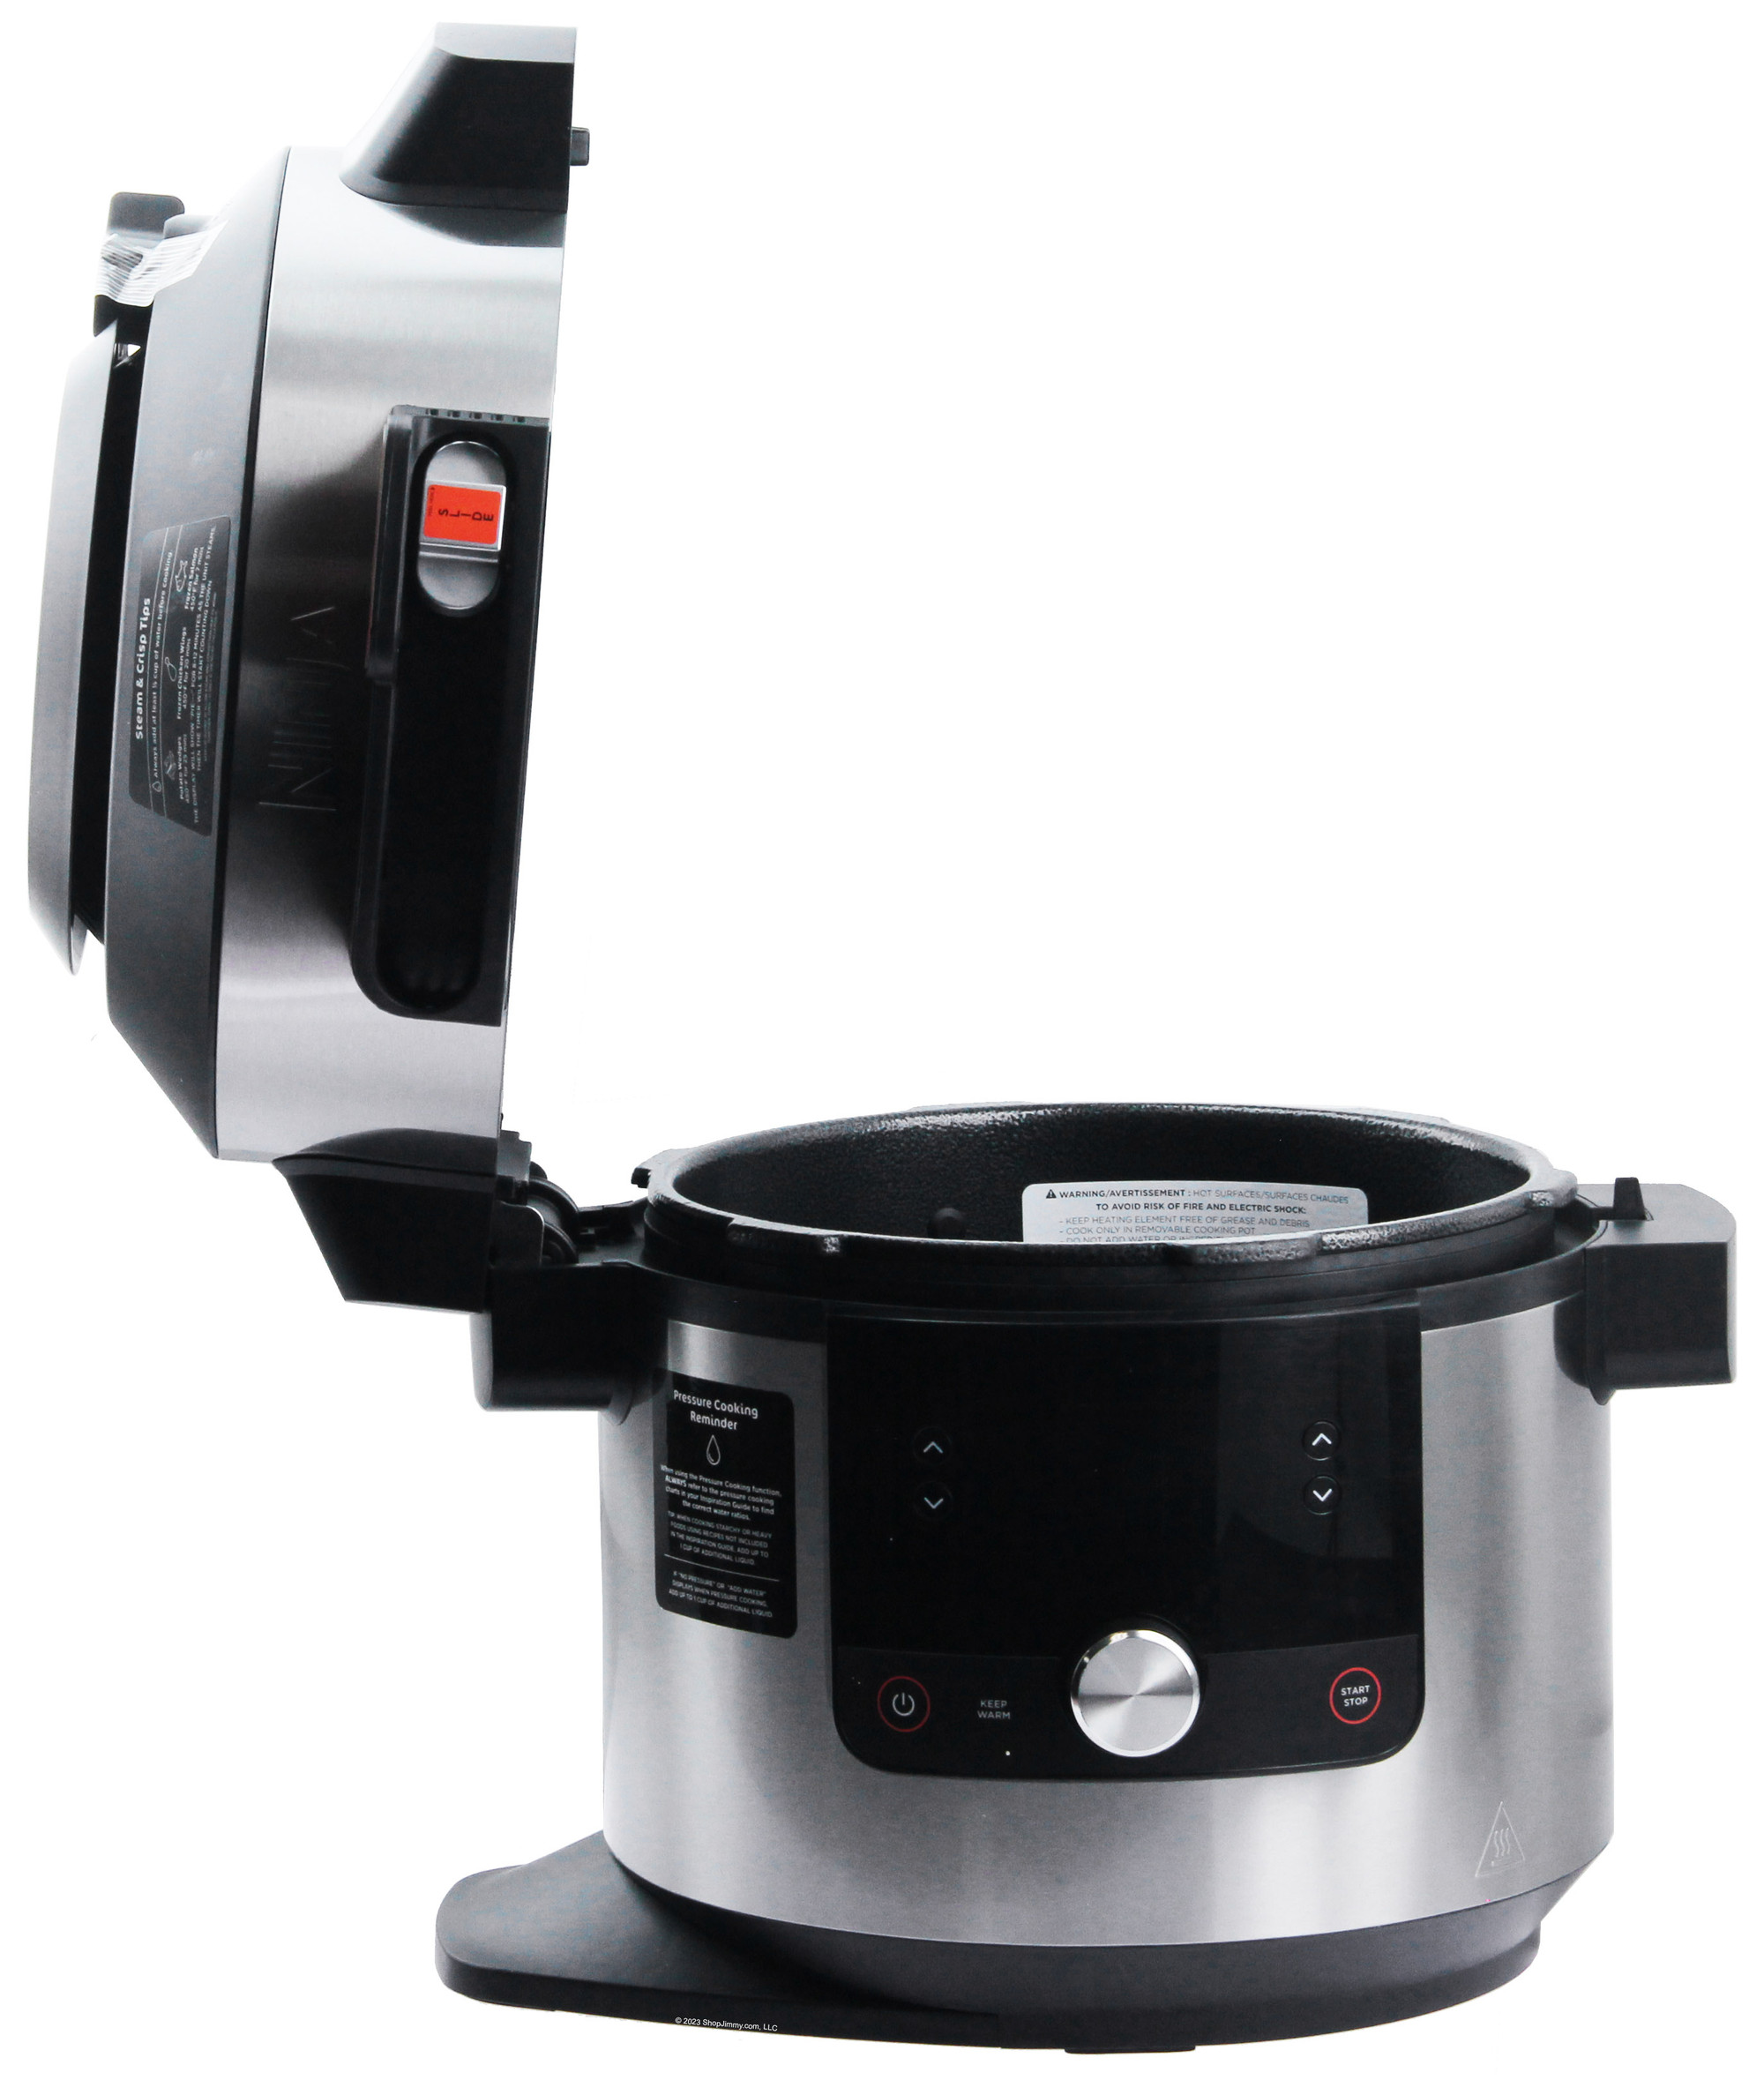 NINJA OL601 Foodi XL 8 Qt. Pressure Cooker Steam Fryer Instructions